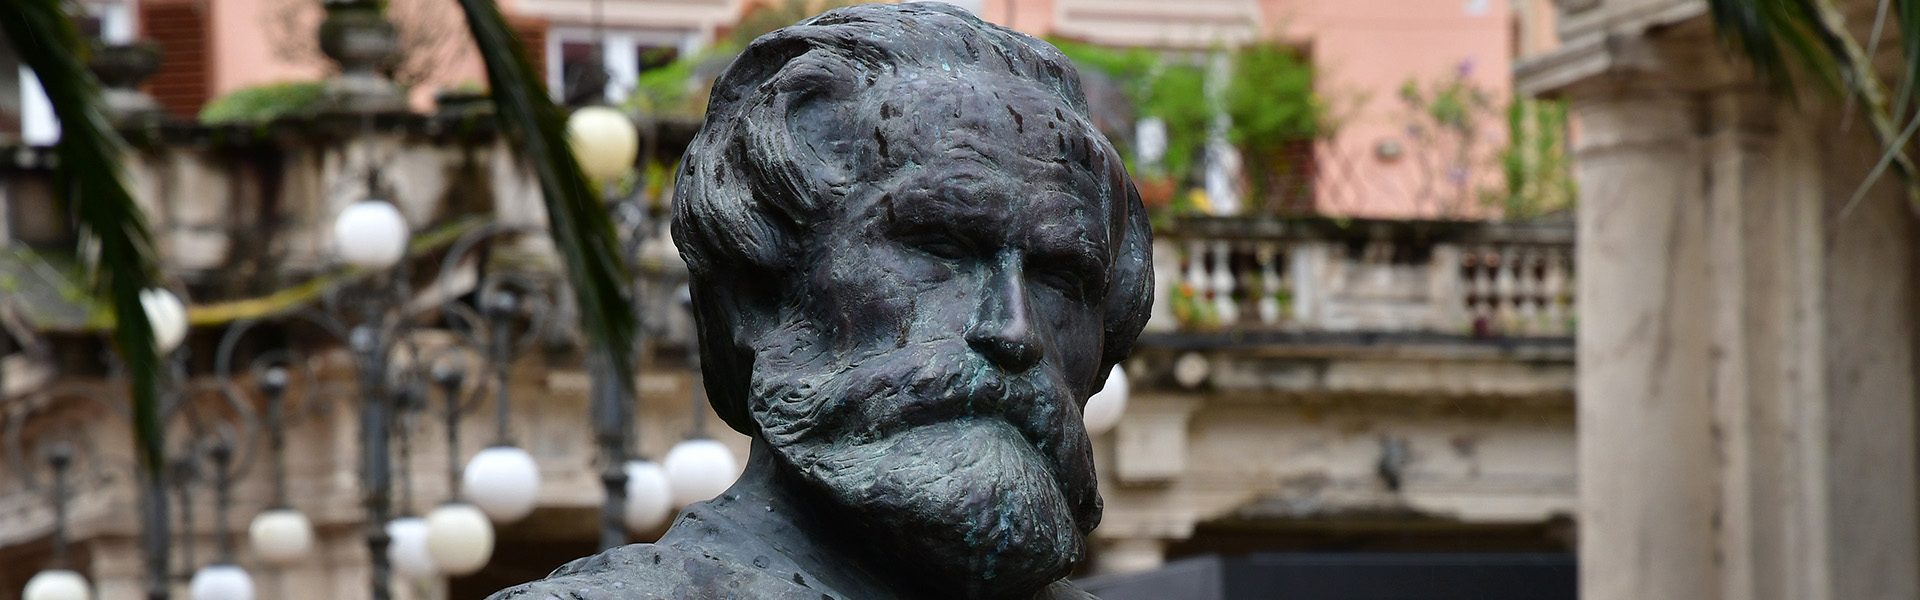 Busto di Giuseppe Verdi, dettaglio